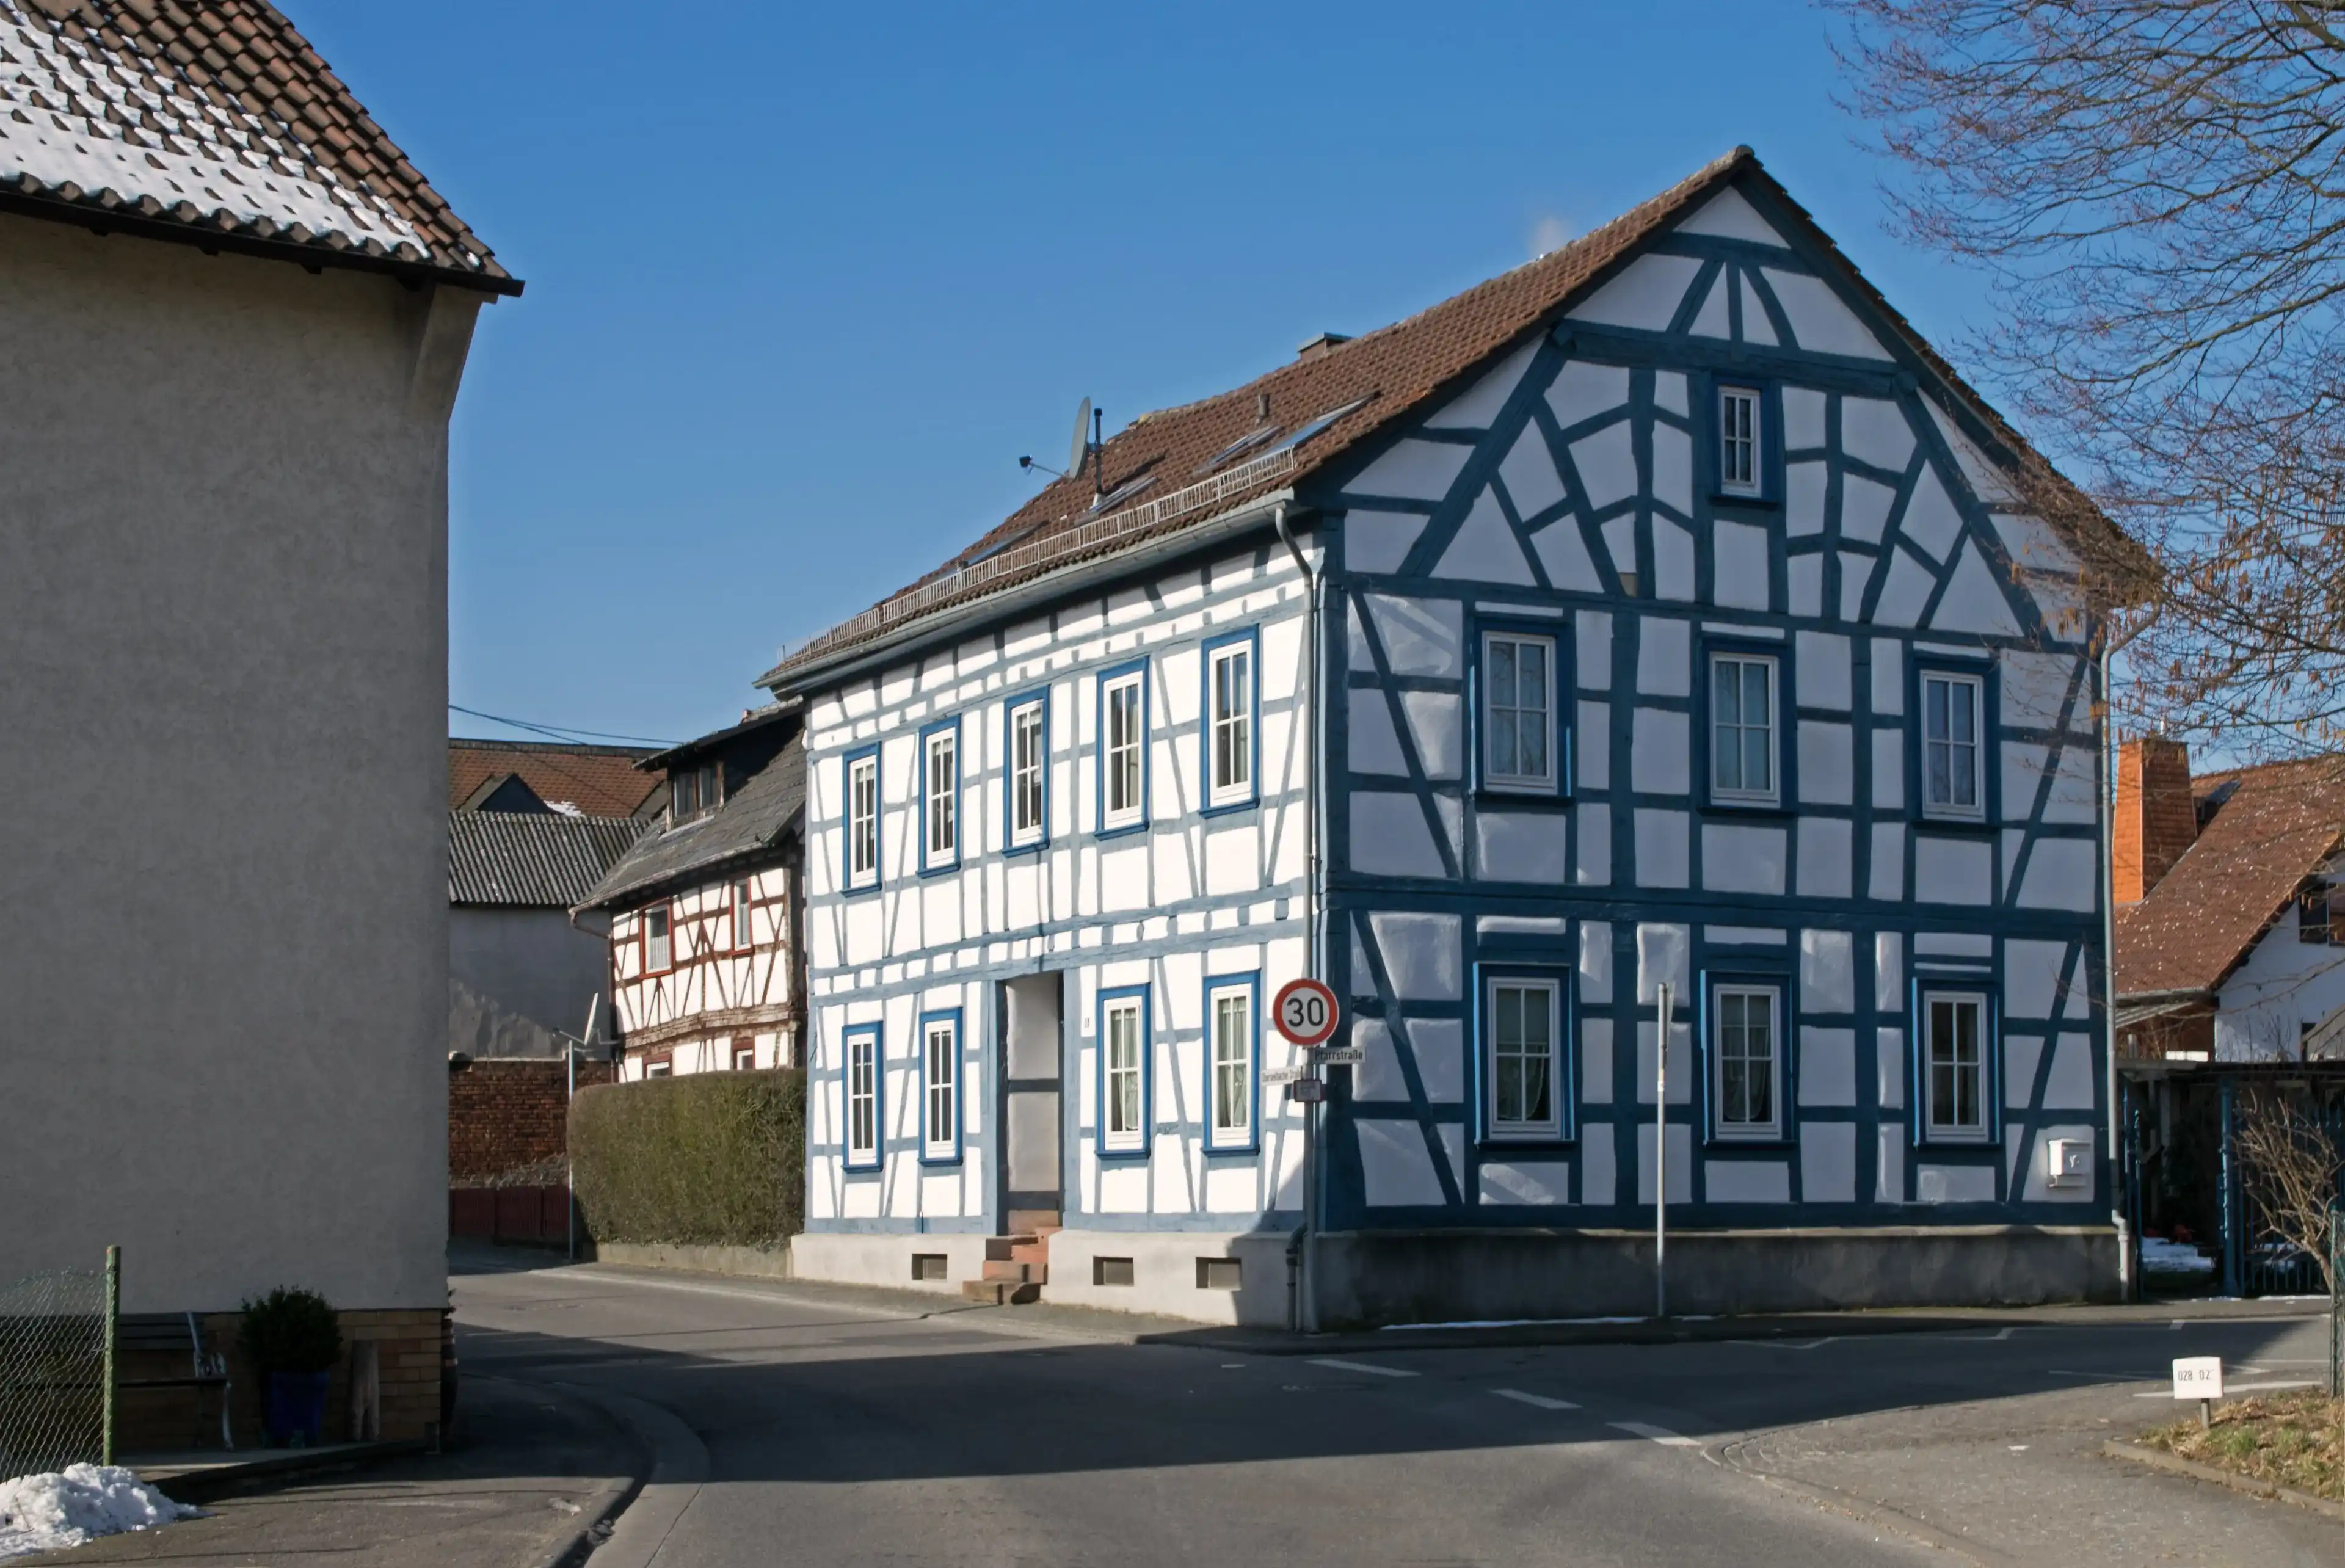 Best Niedernhausen hotels. Cheap hotels in Niedernhausen, Germany